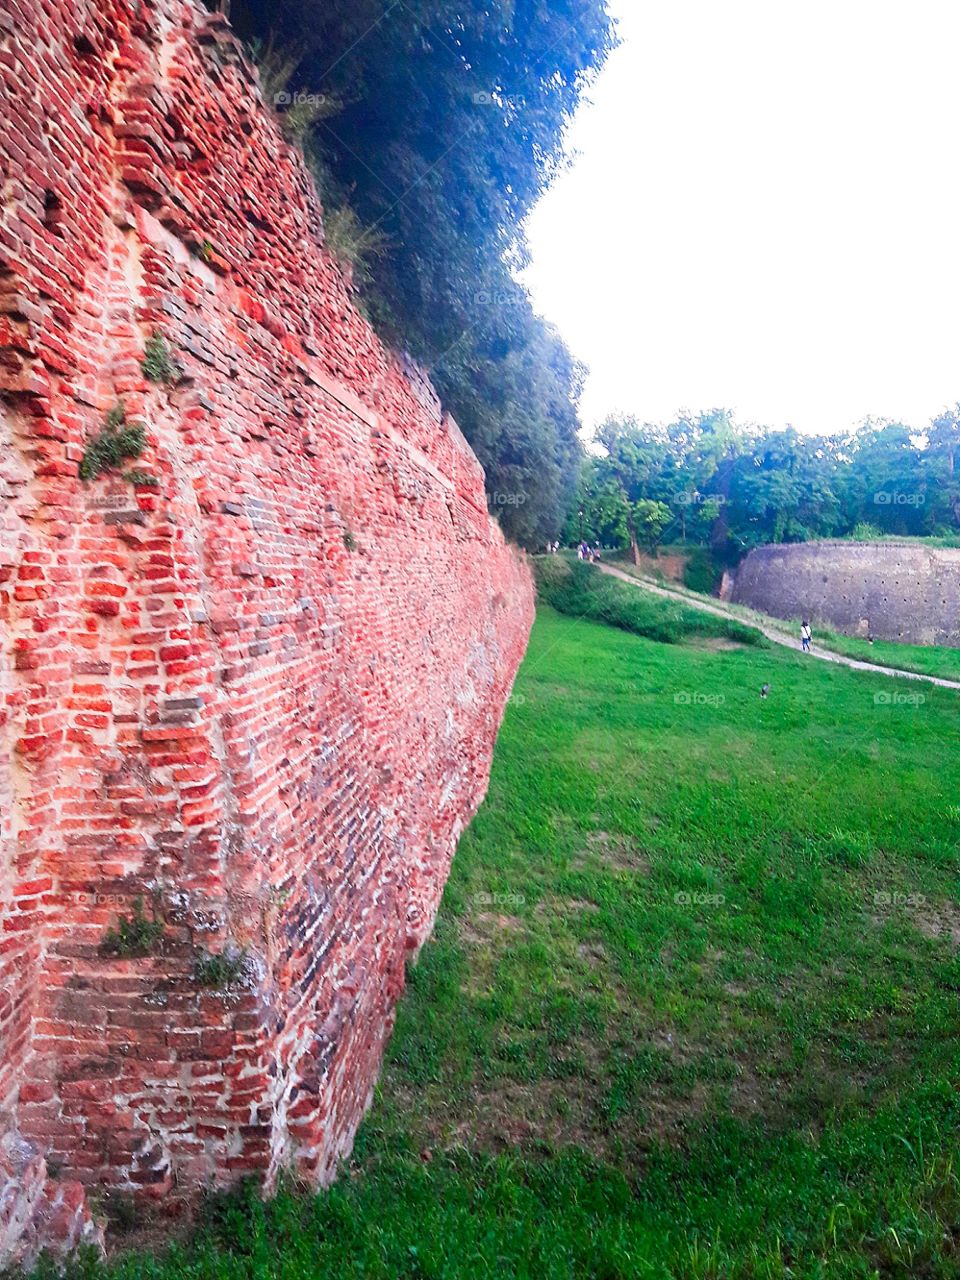 under the Ferrara's walls